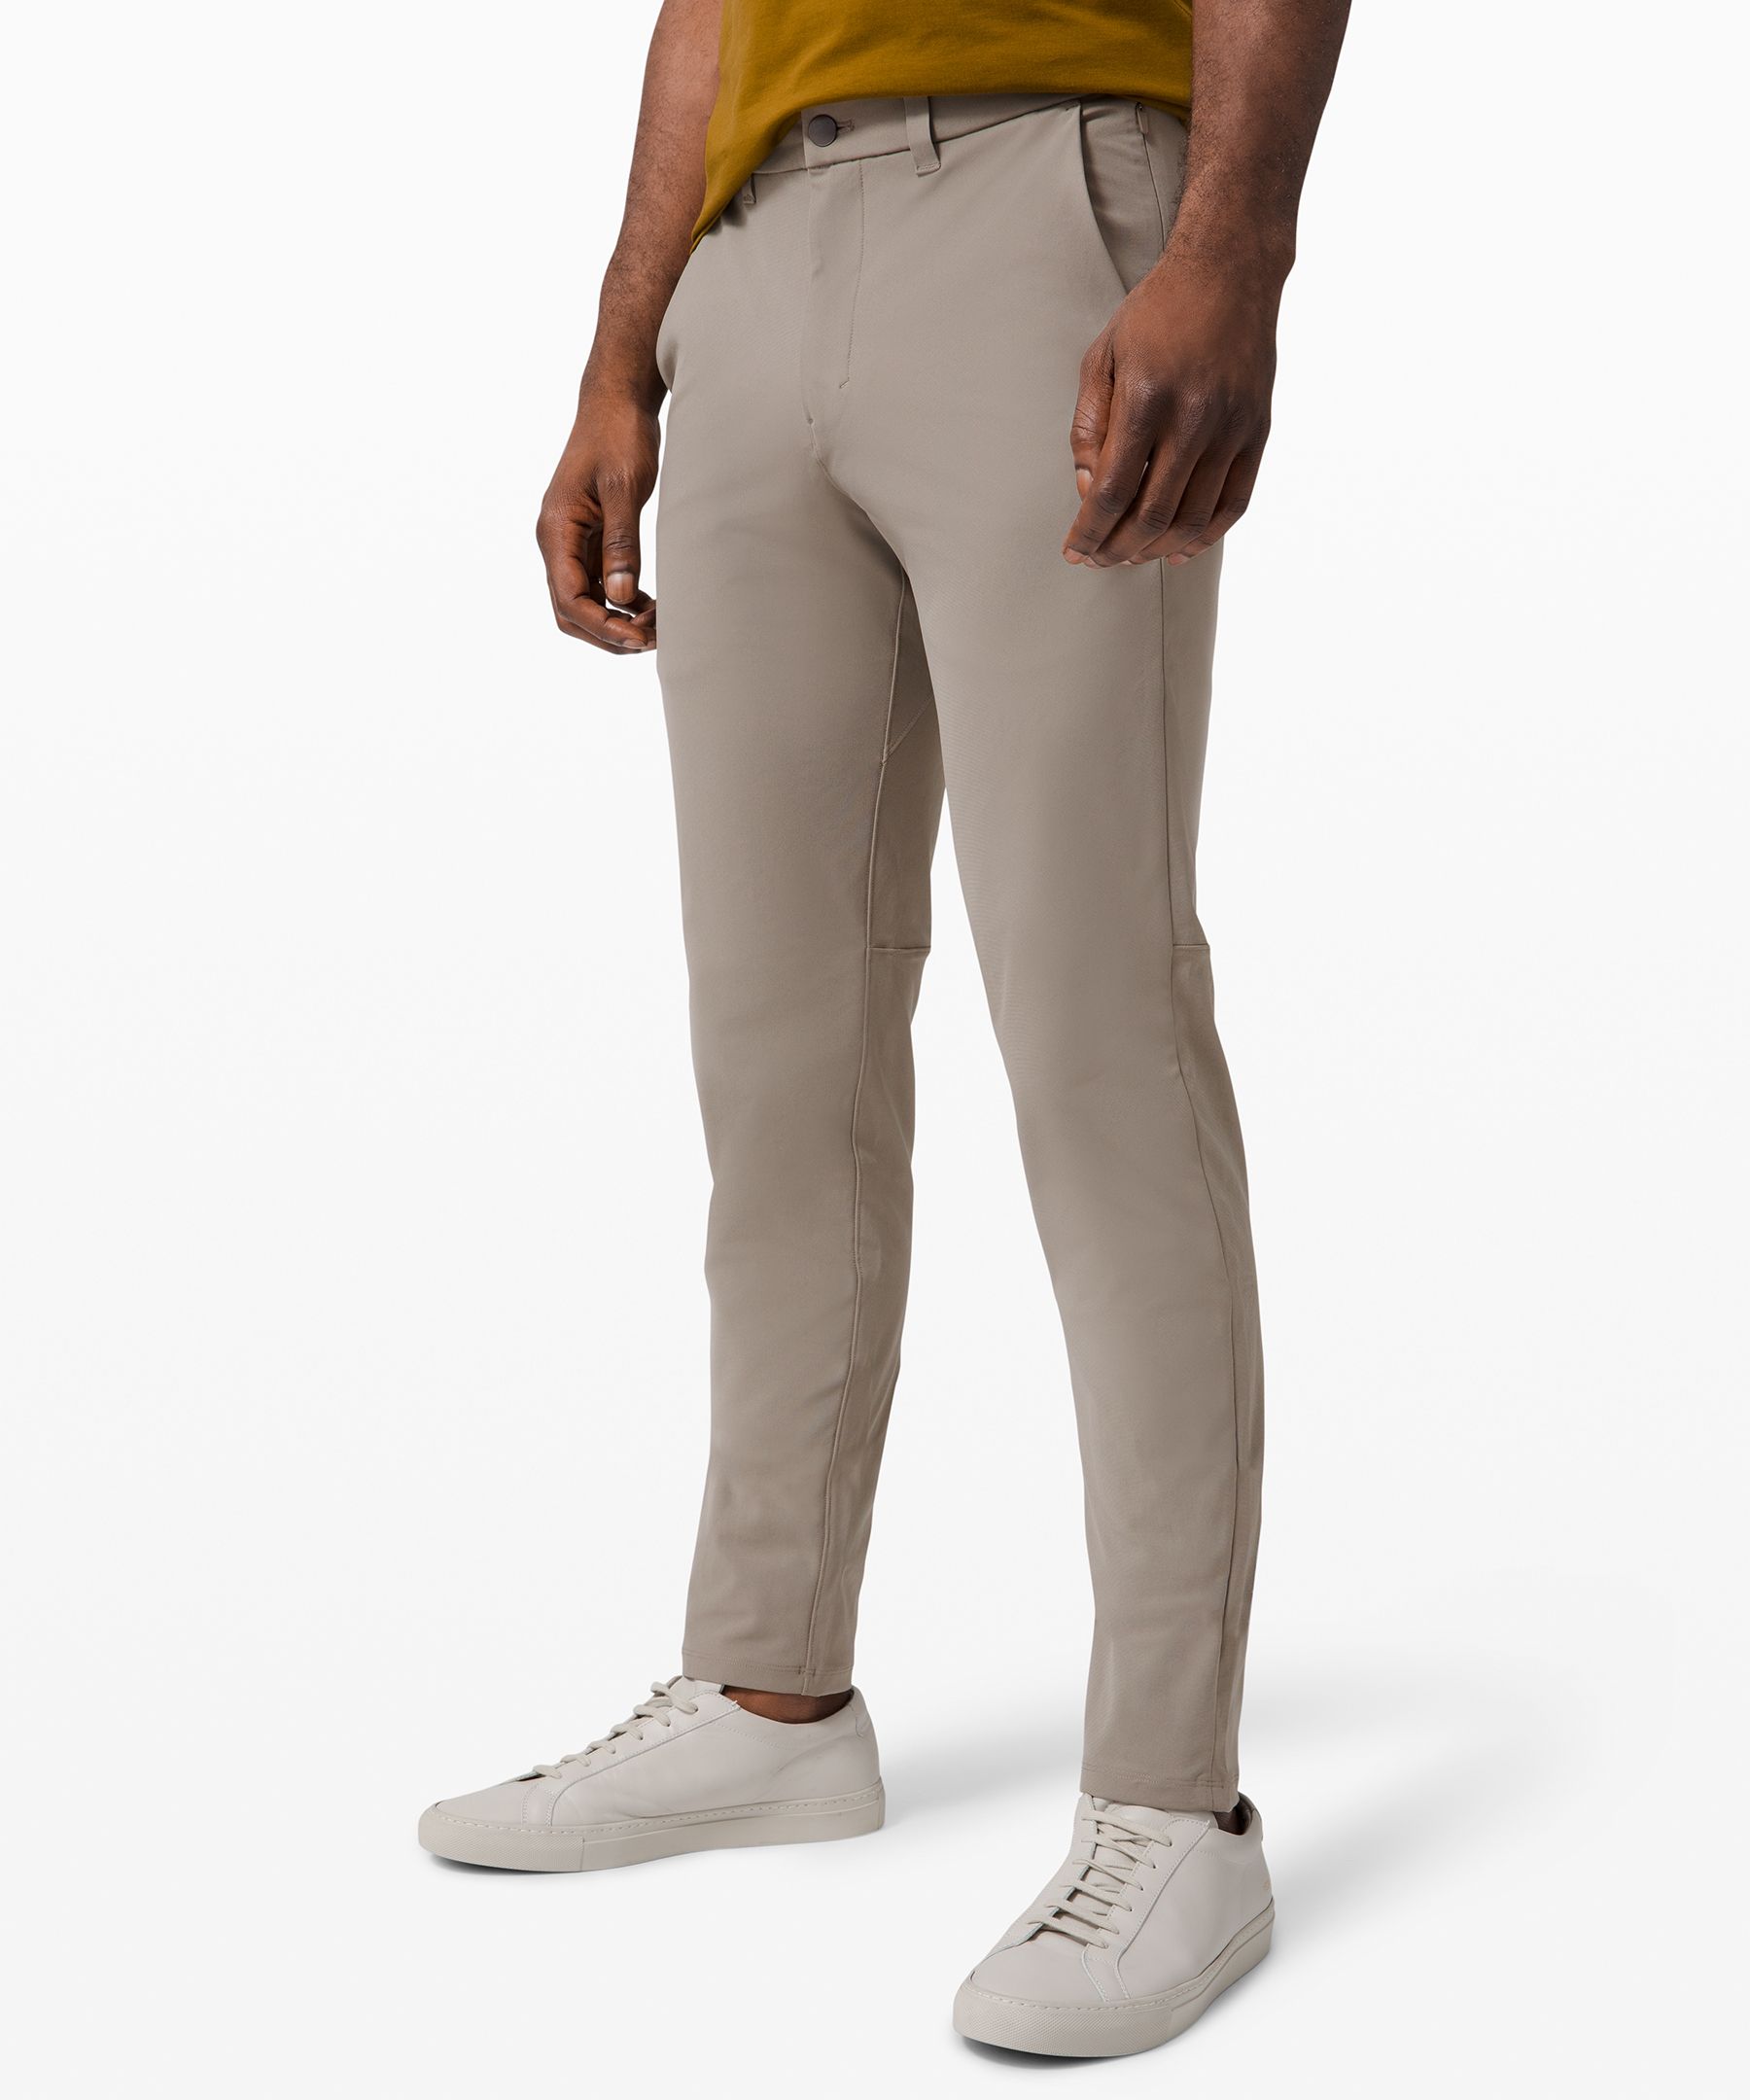 Lululemon Commission Slim-fit Pants 32